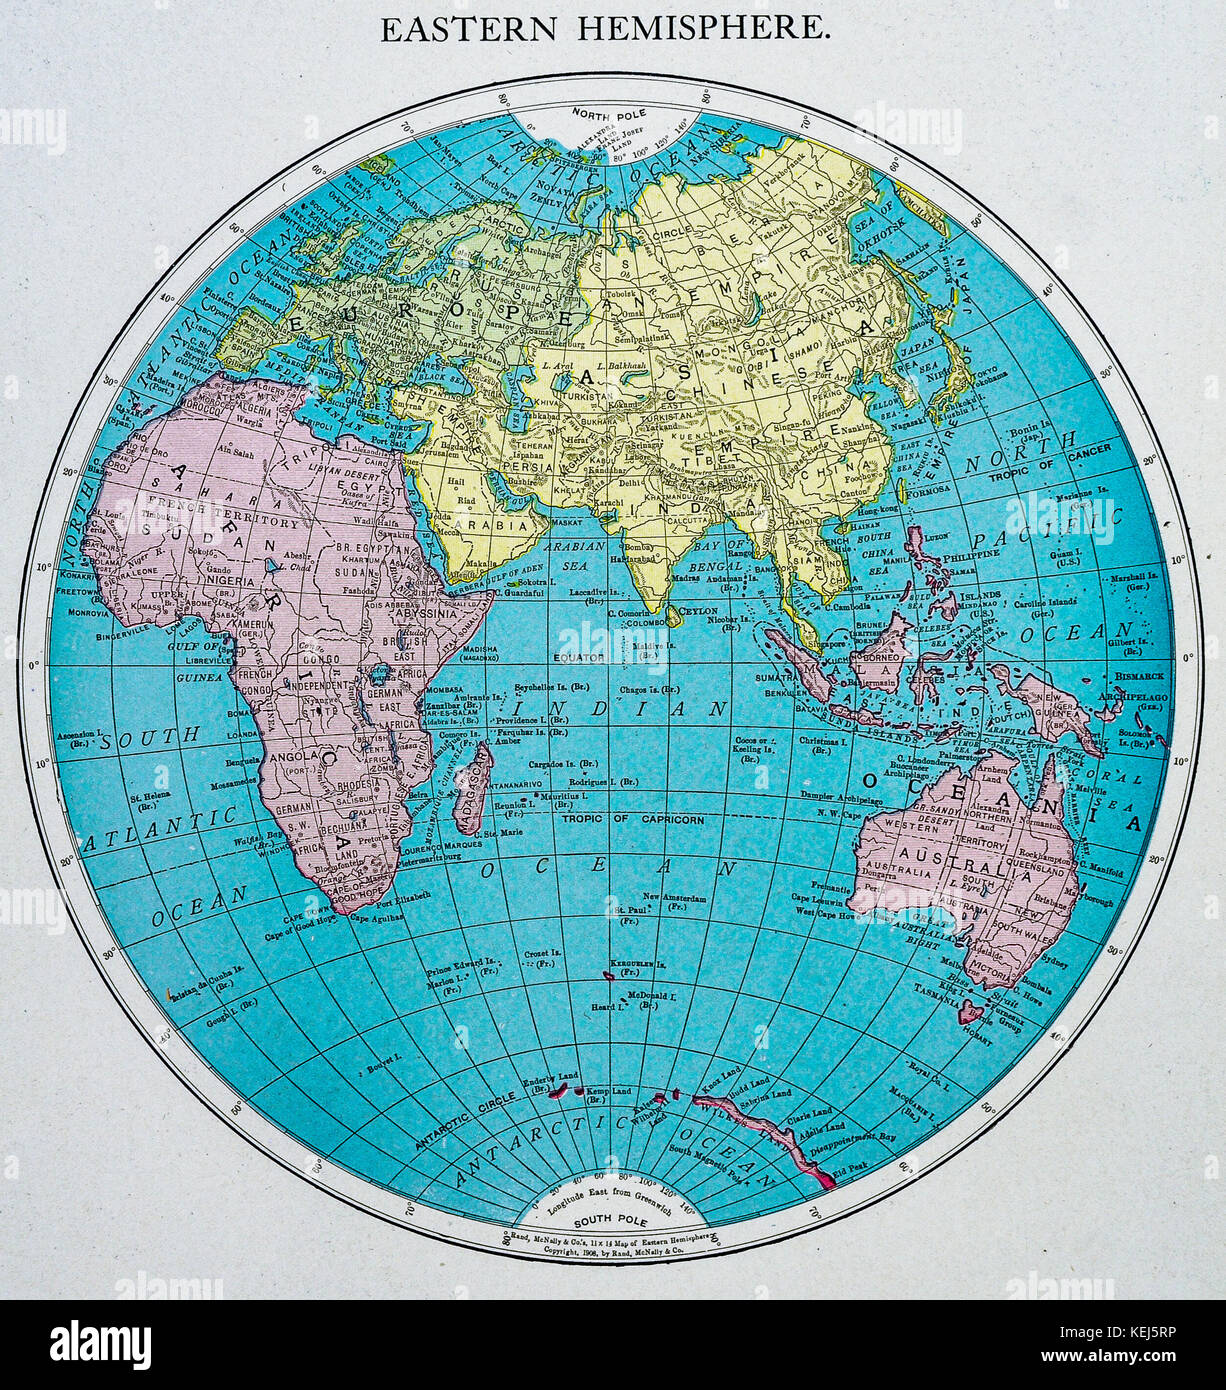 Особенности восточного полушария. Карта восточного полушария. Политическая карта восточного полушария. Глобус Восточное полушарие. Политическая карта полушарий.